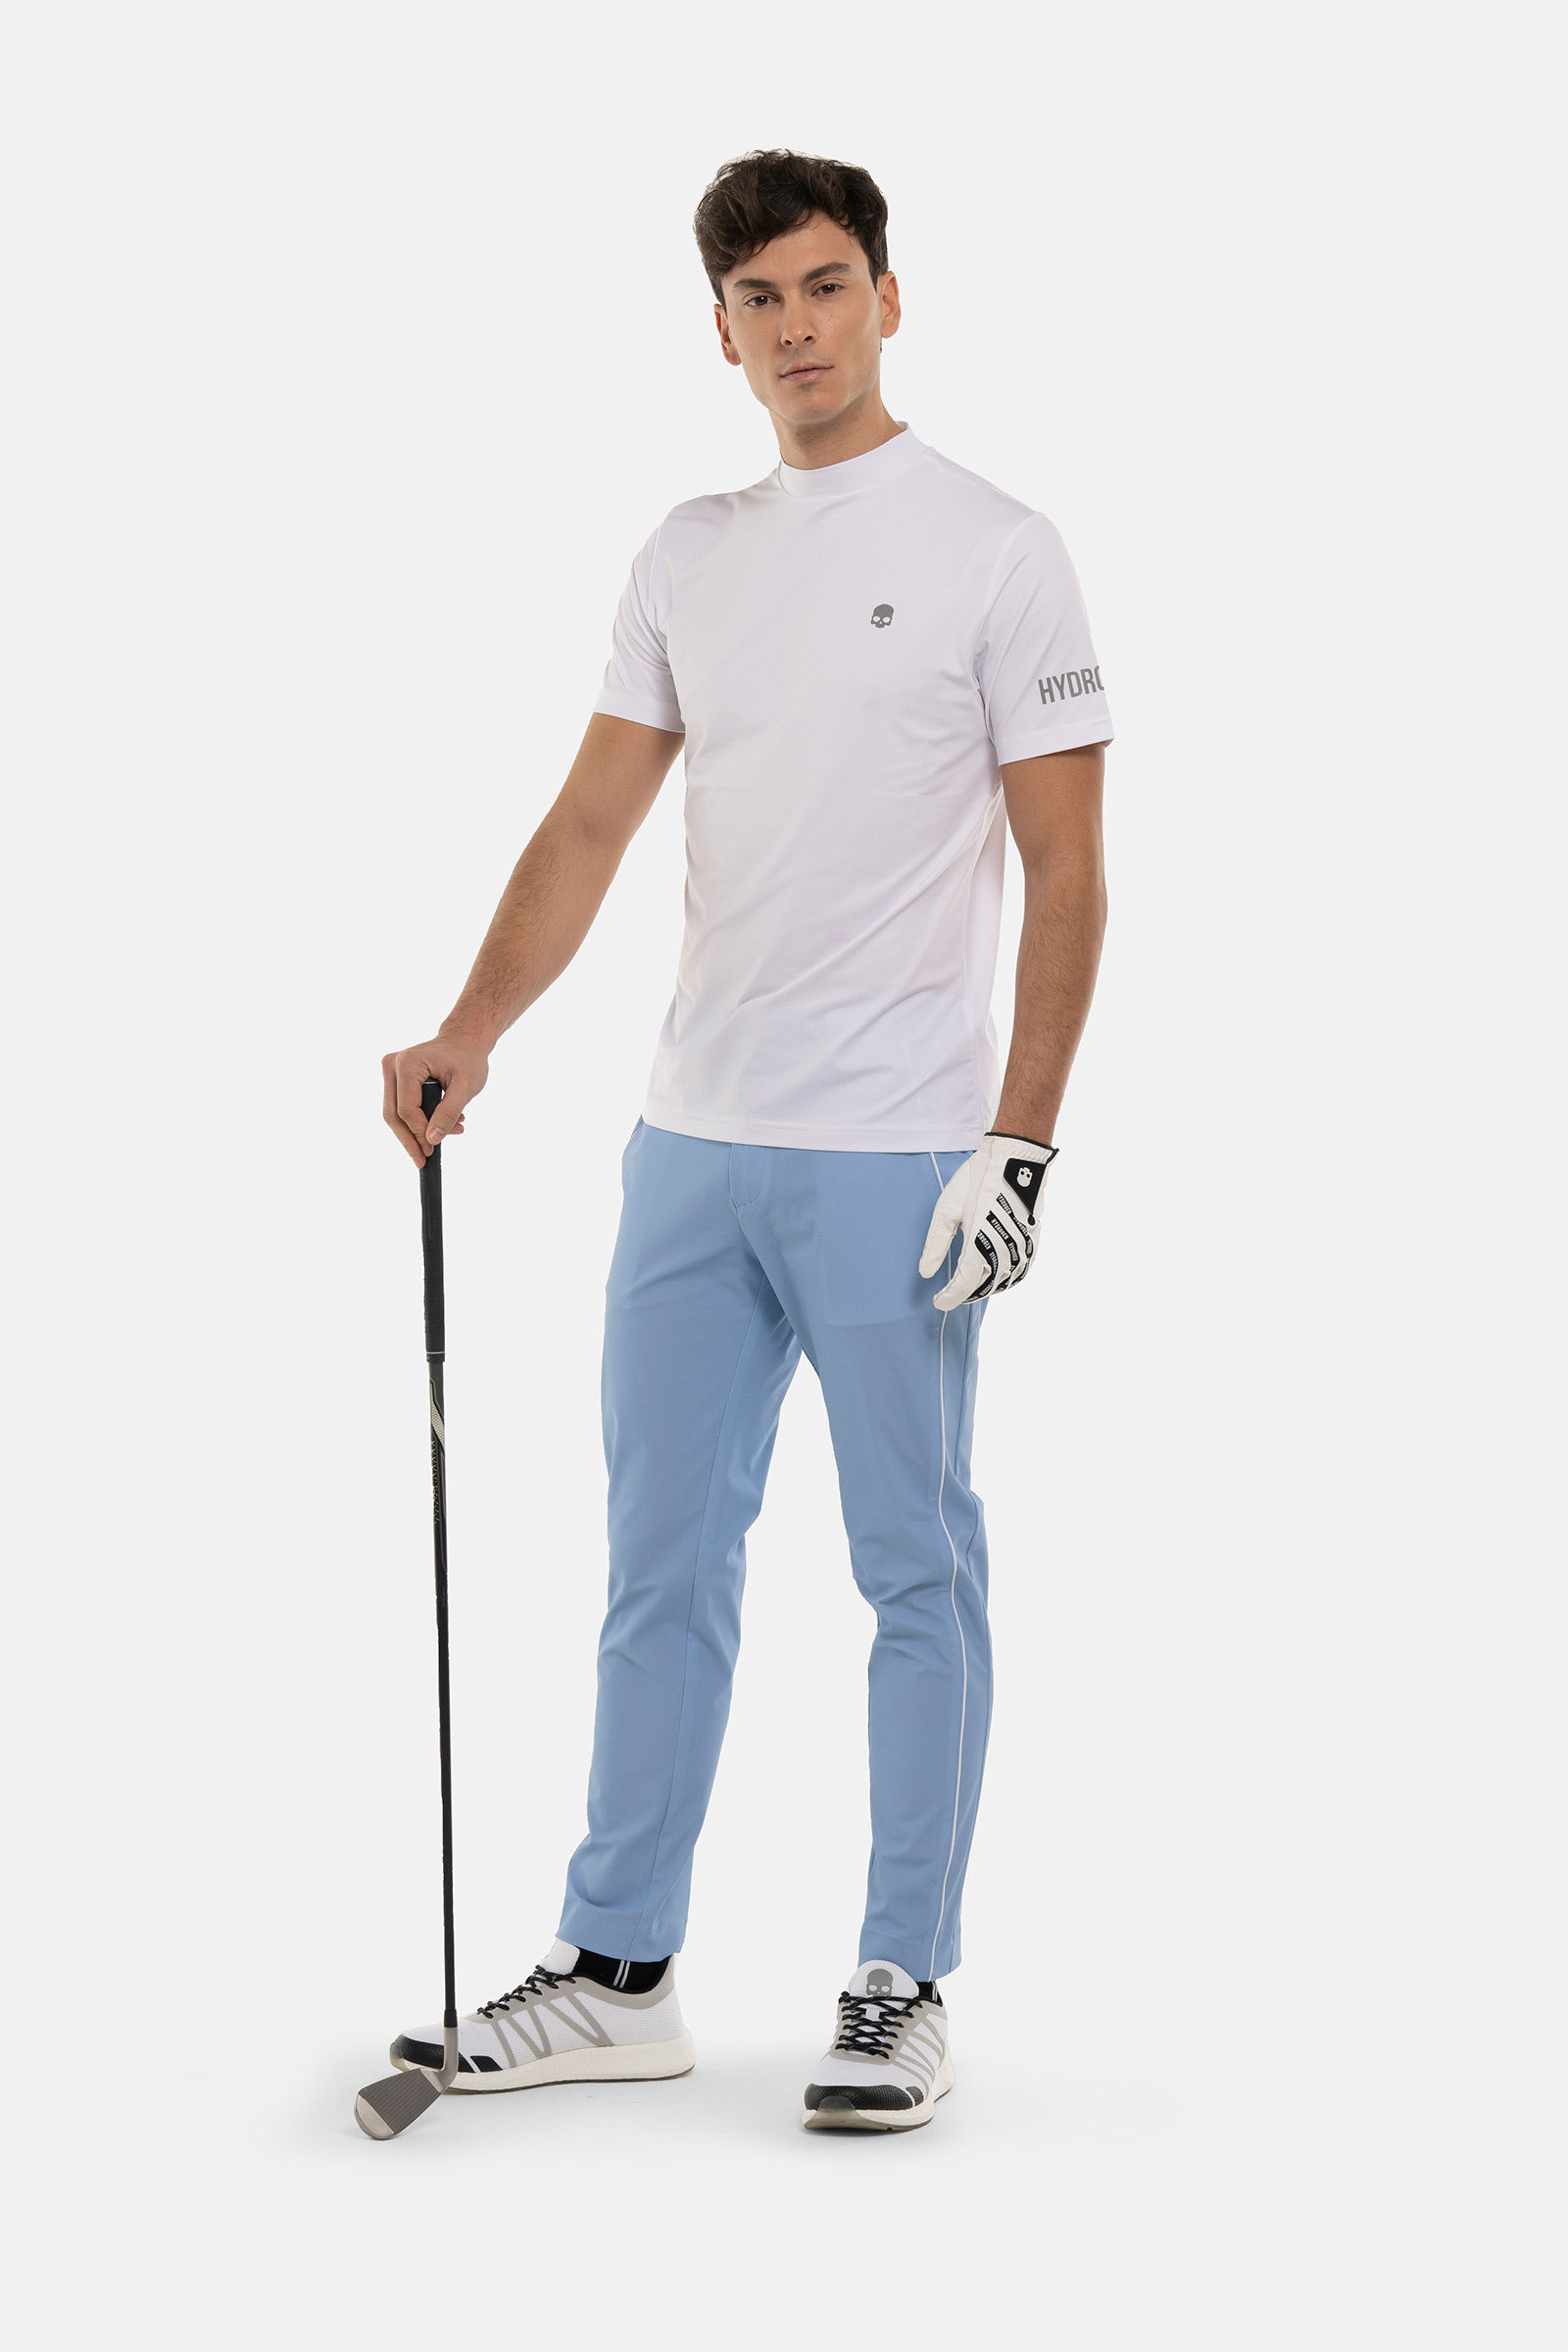 GOLF ROLL NECK - WHITE - Hydrogen - Luxury Sportwear